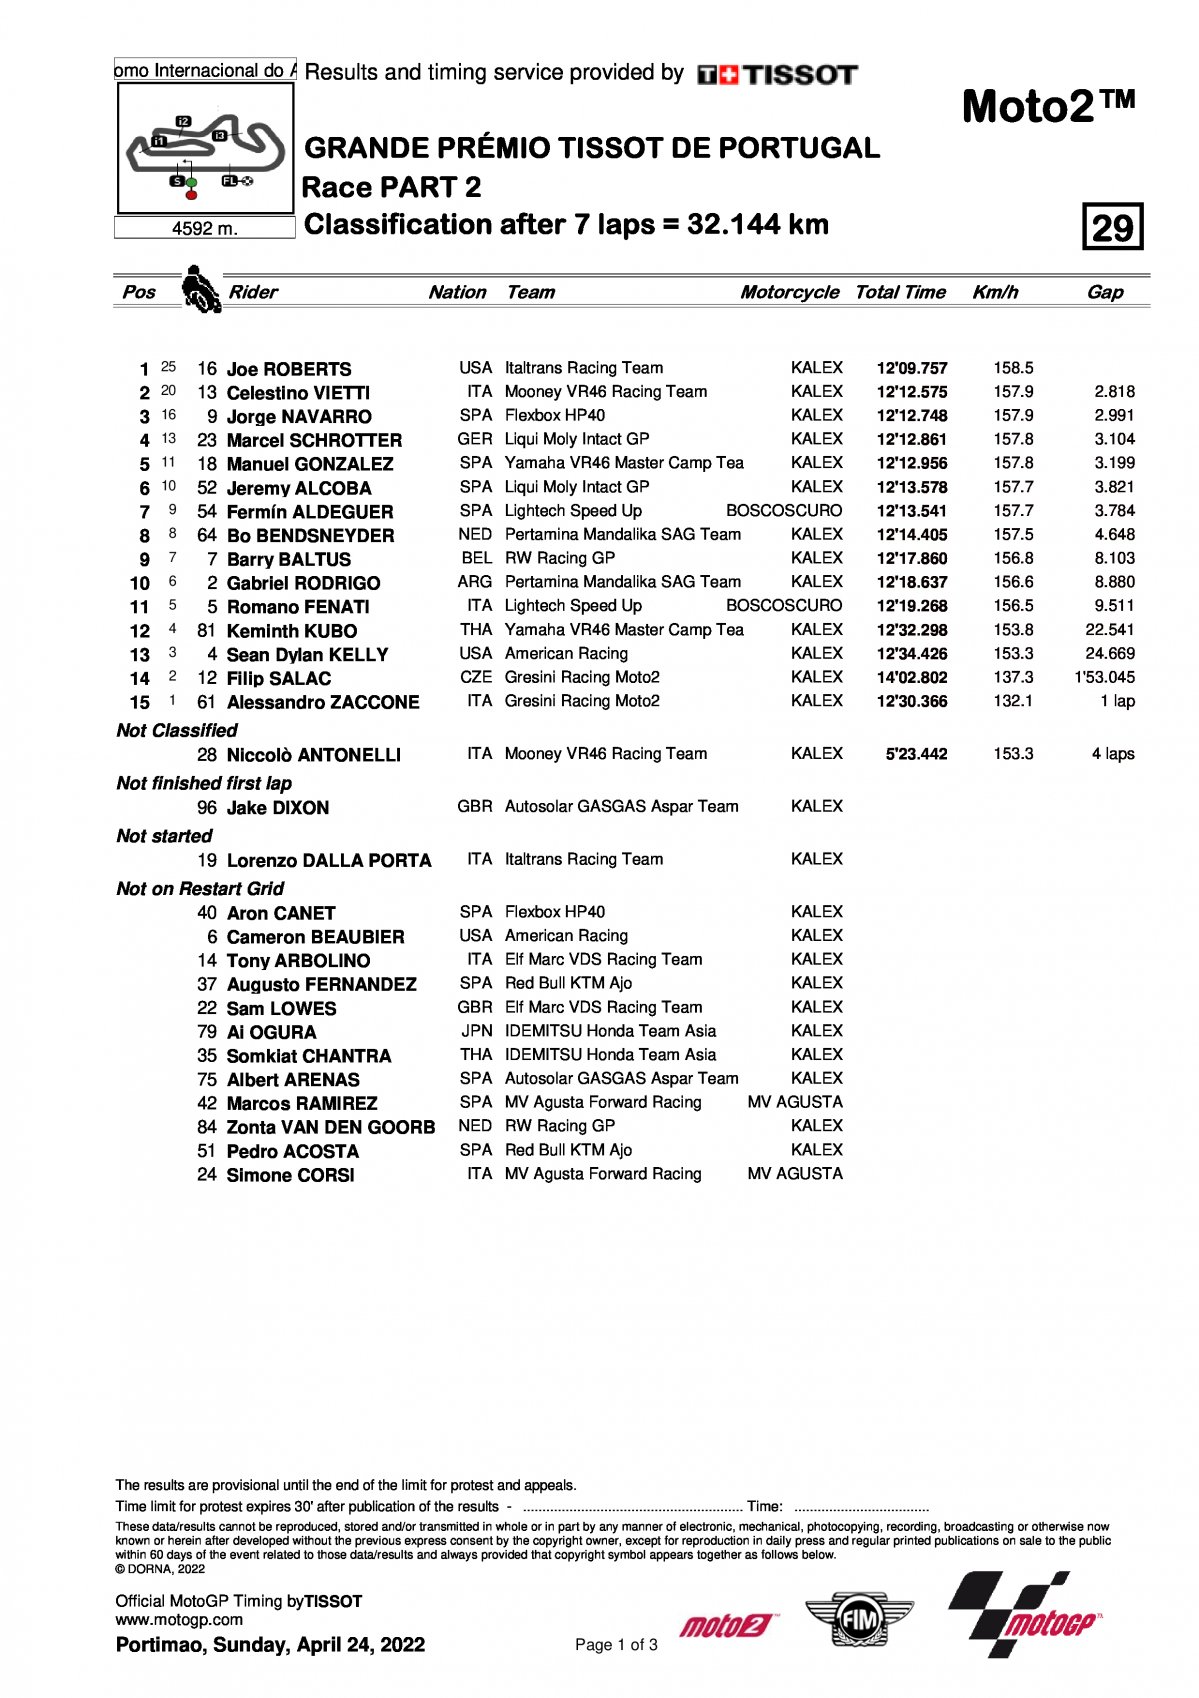 Результаты Гран-При Португалии, Moto2 (24/04/2022)